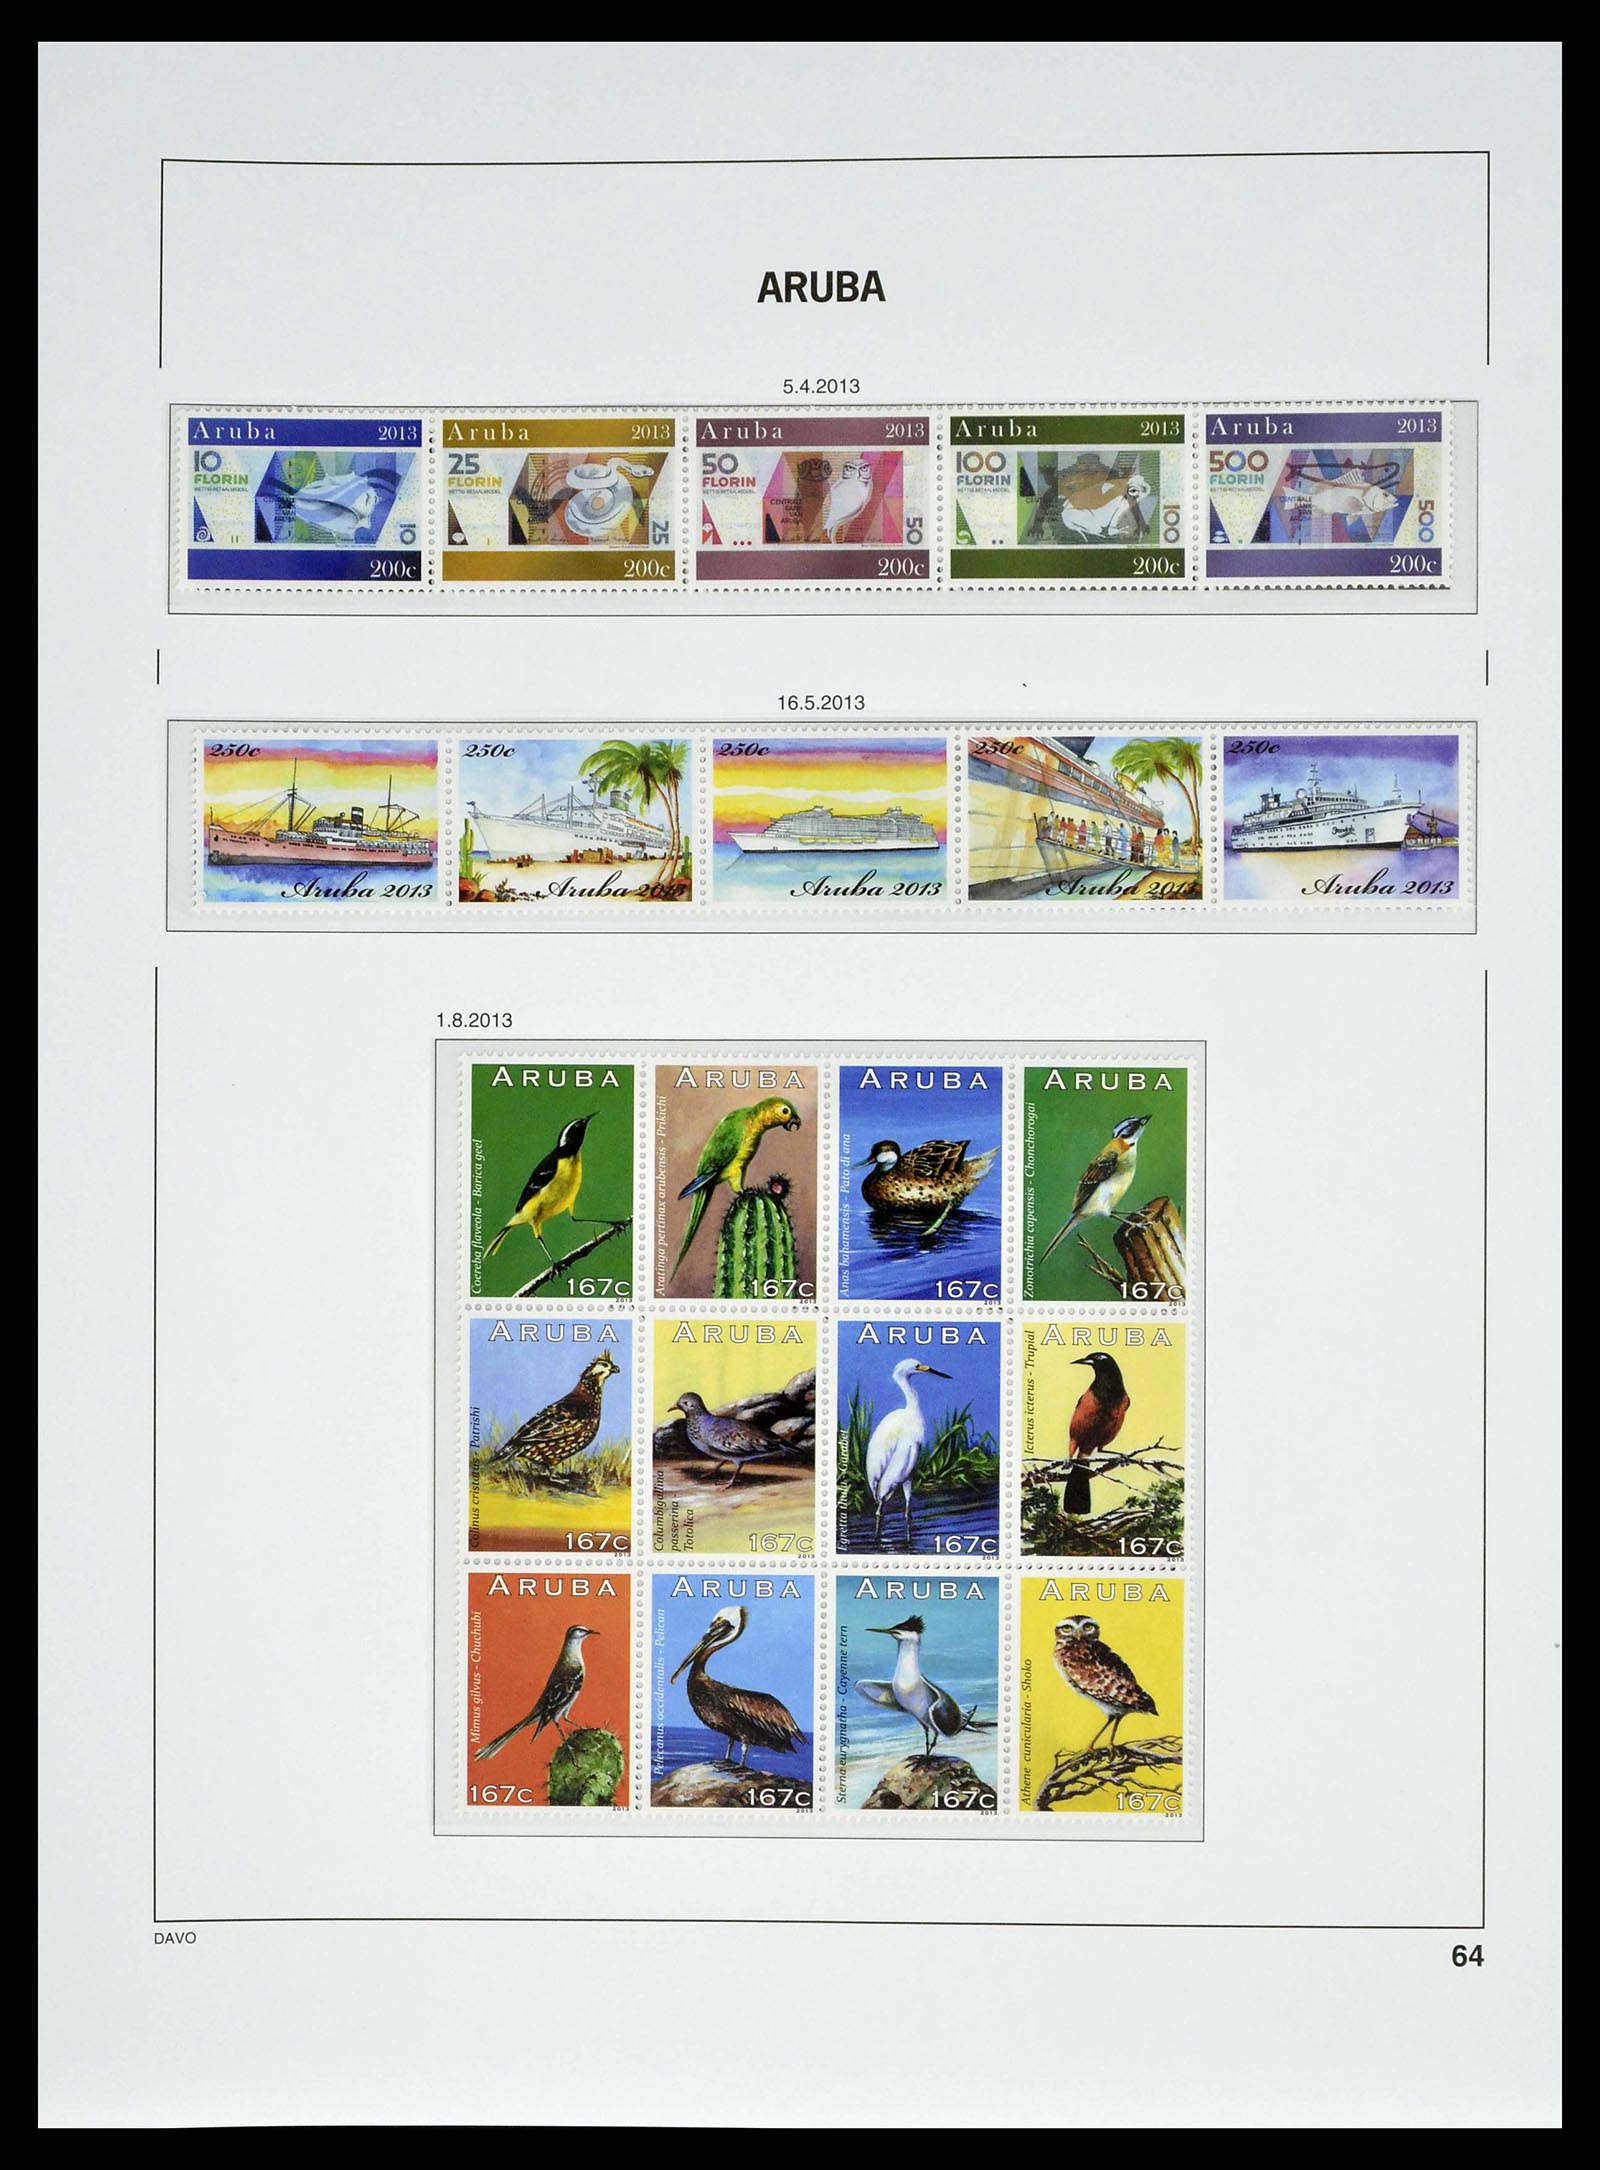 39361 0064 - Postzegelverzameling 39361 Aruba 1986-2013.